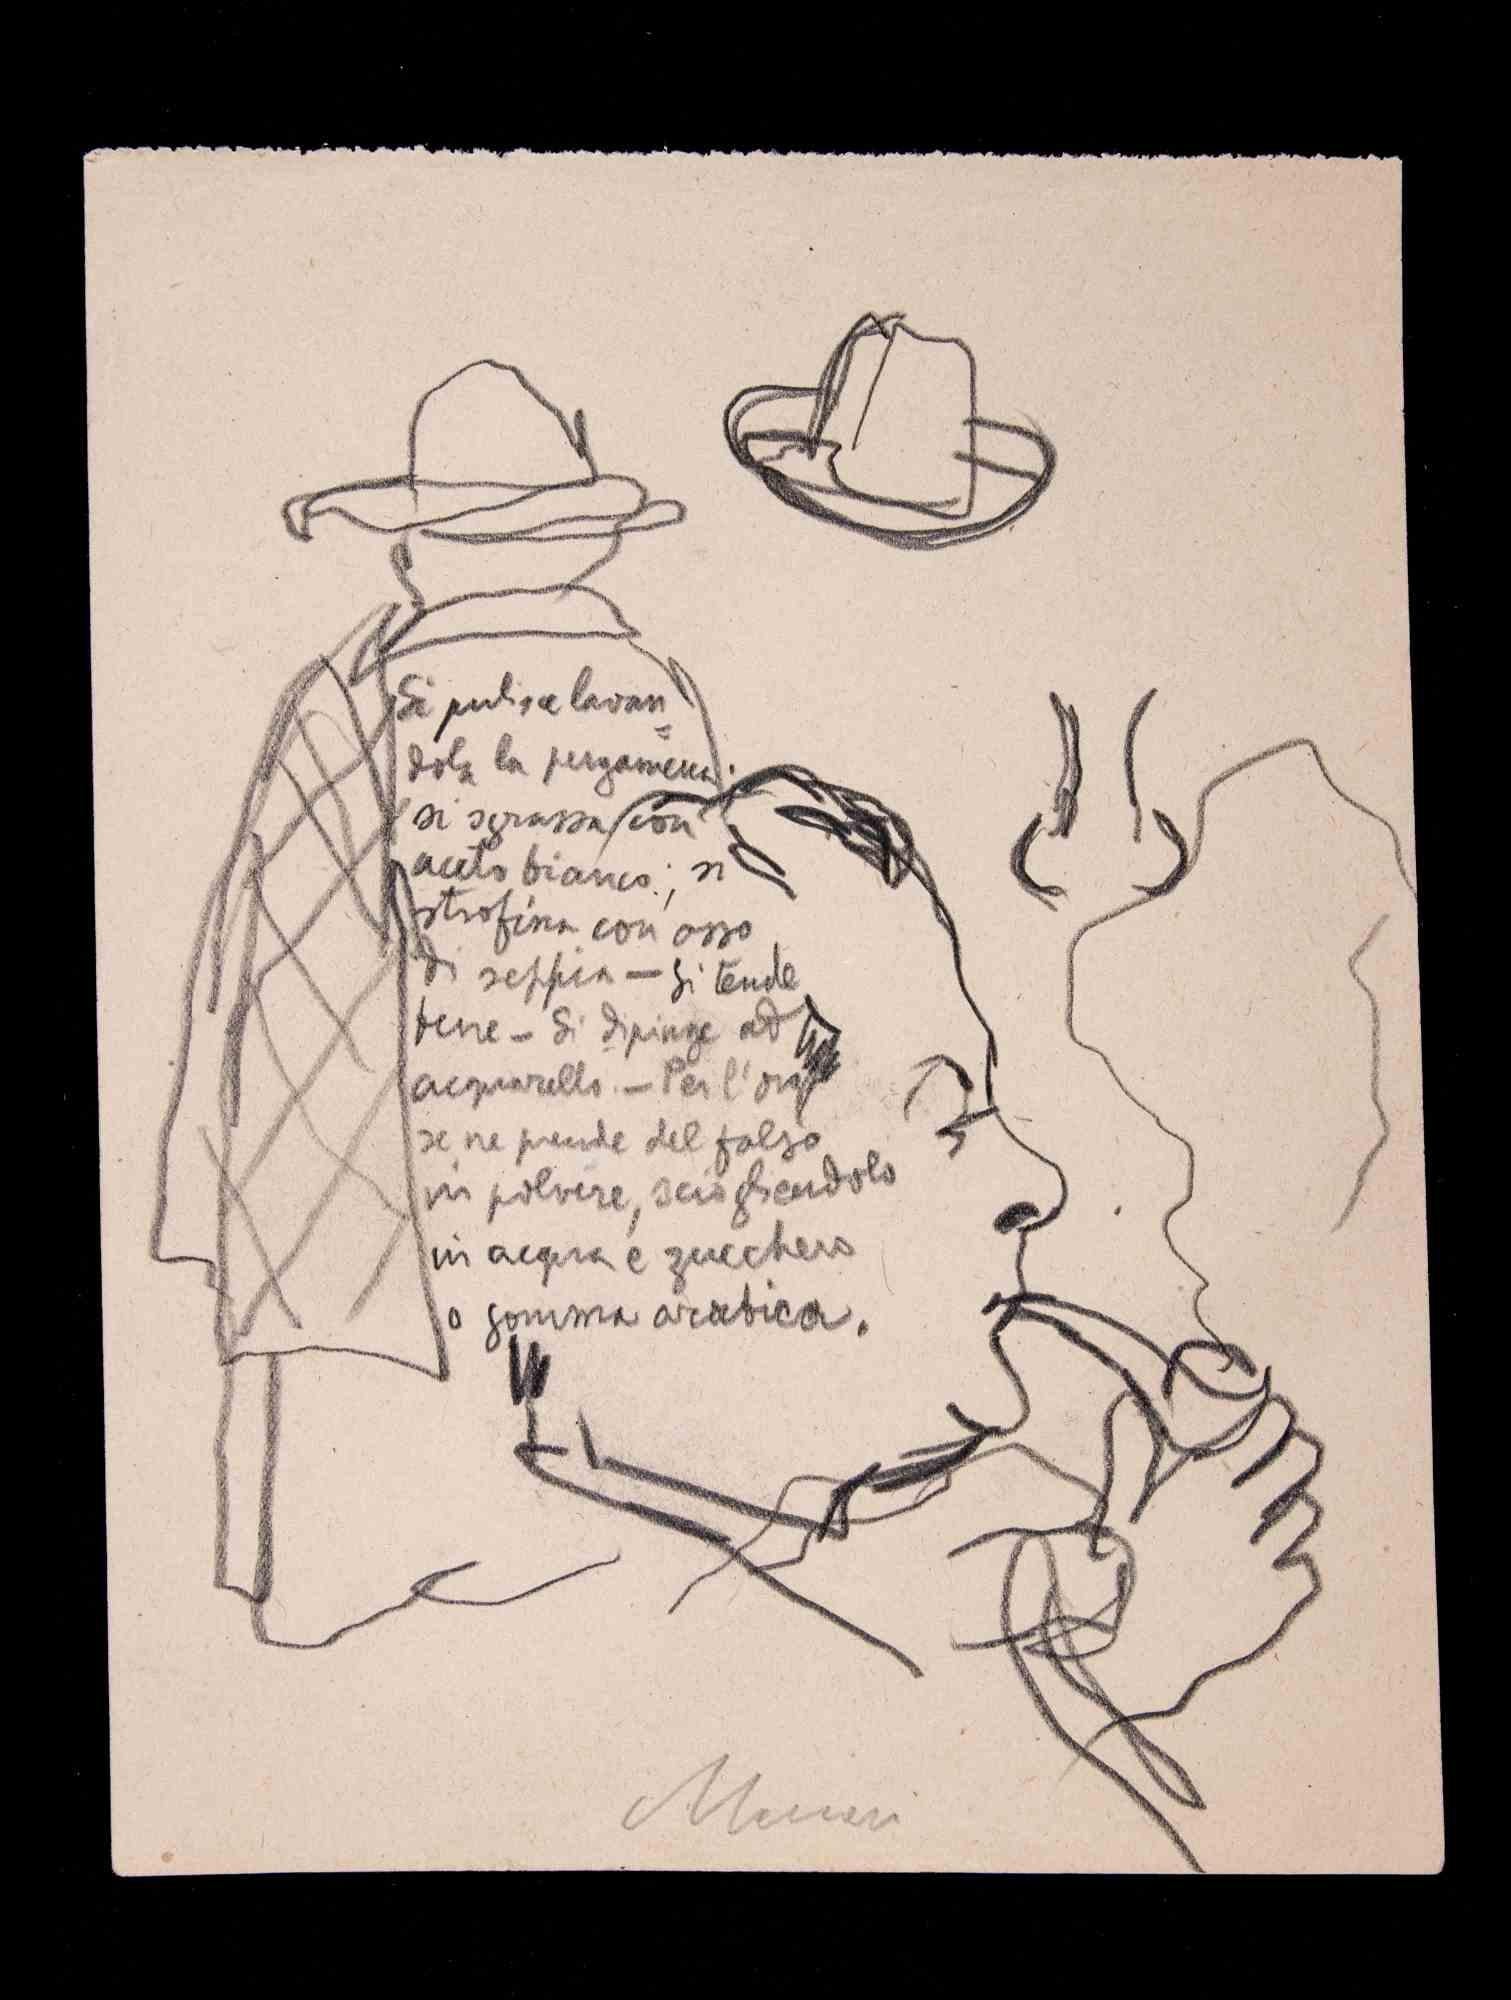 Sketch ist eine Feder- und Bleistiftzeichnung von Mino Maccari  (1924-1989) im Jahr 1945.

Handsigniert am unteren Rand.

Guter Zustand auf leicht vergilbtem Papier.

Mino Maccari (Siena, 1924-Rom, 16. Juni 1989) war ein italienischer